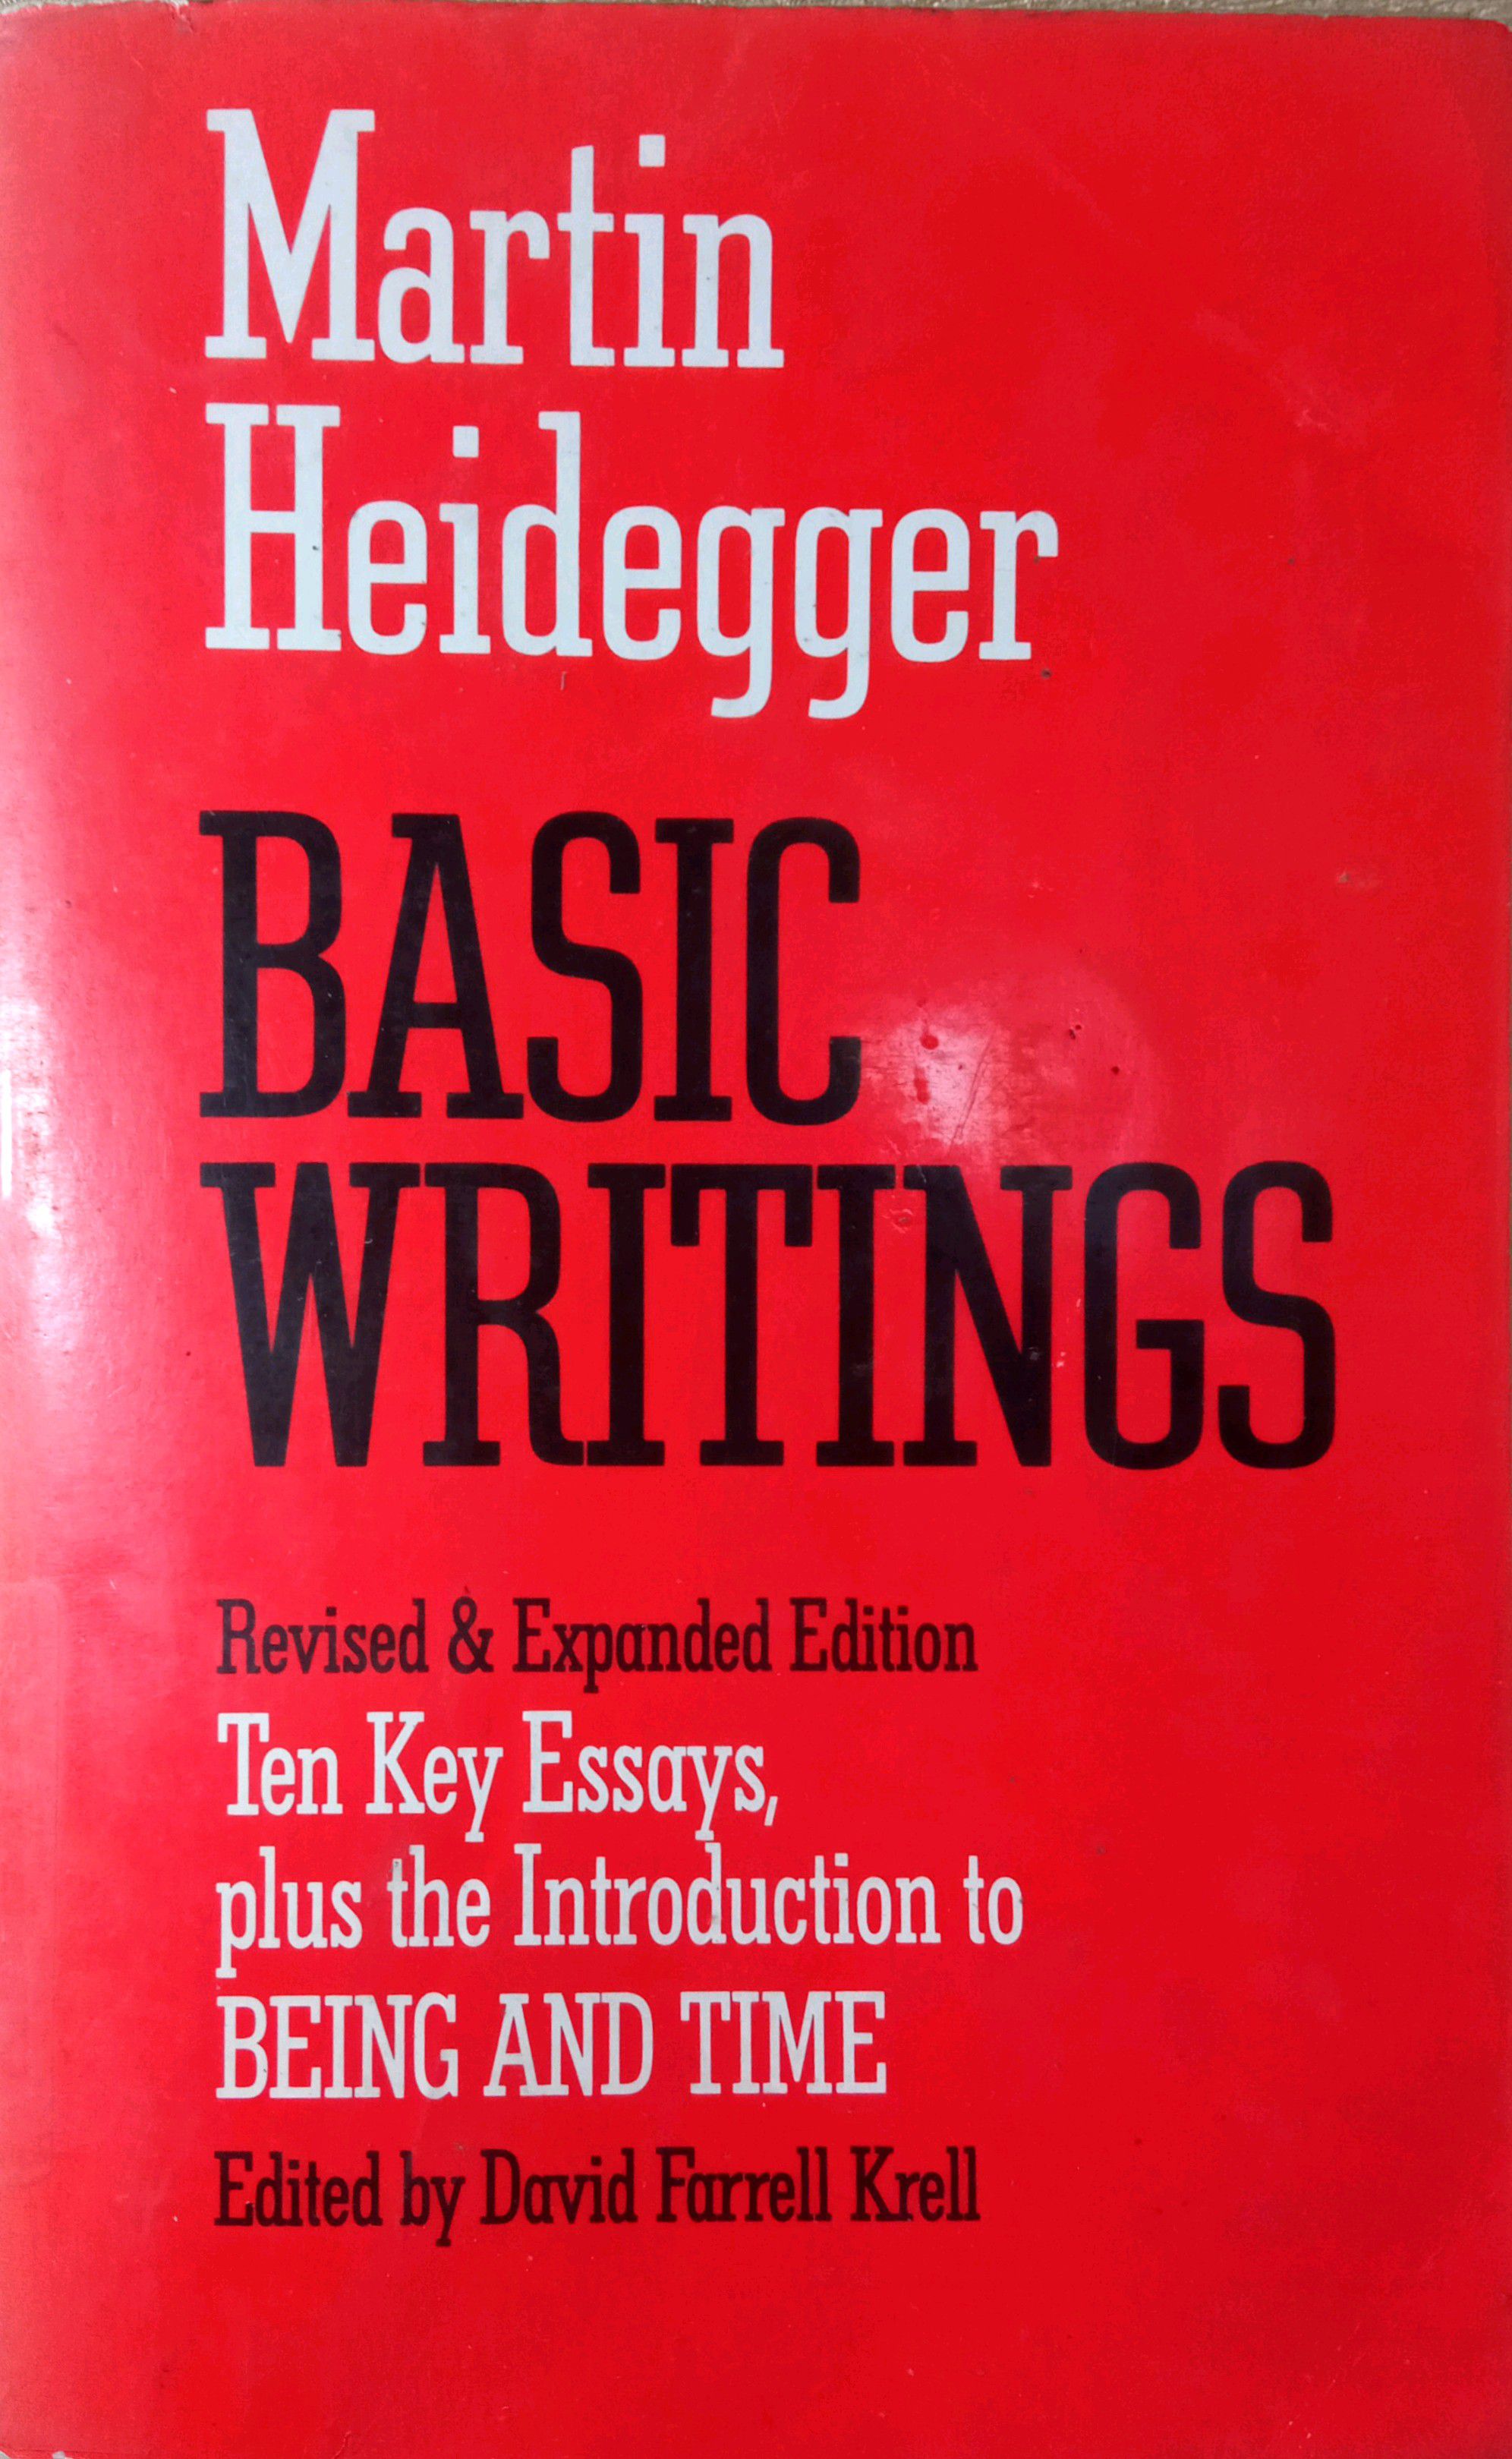 MARTIN HEIDEGGER - BASIC WRITINGS